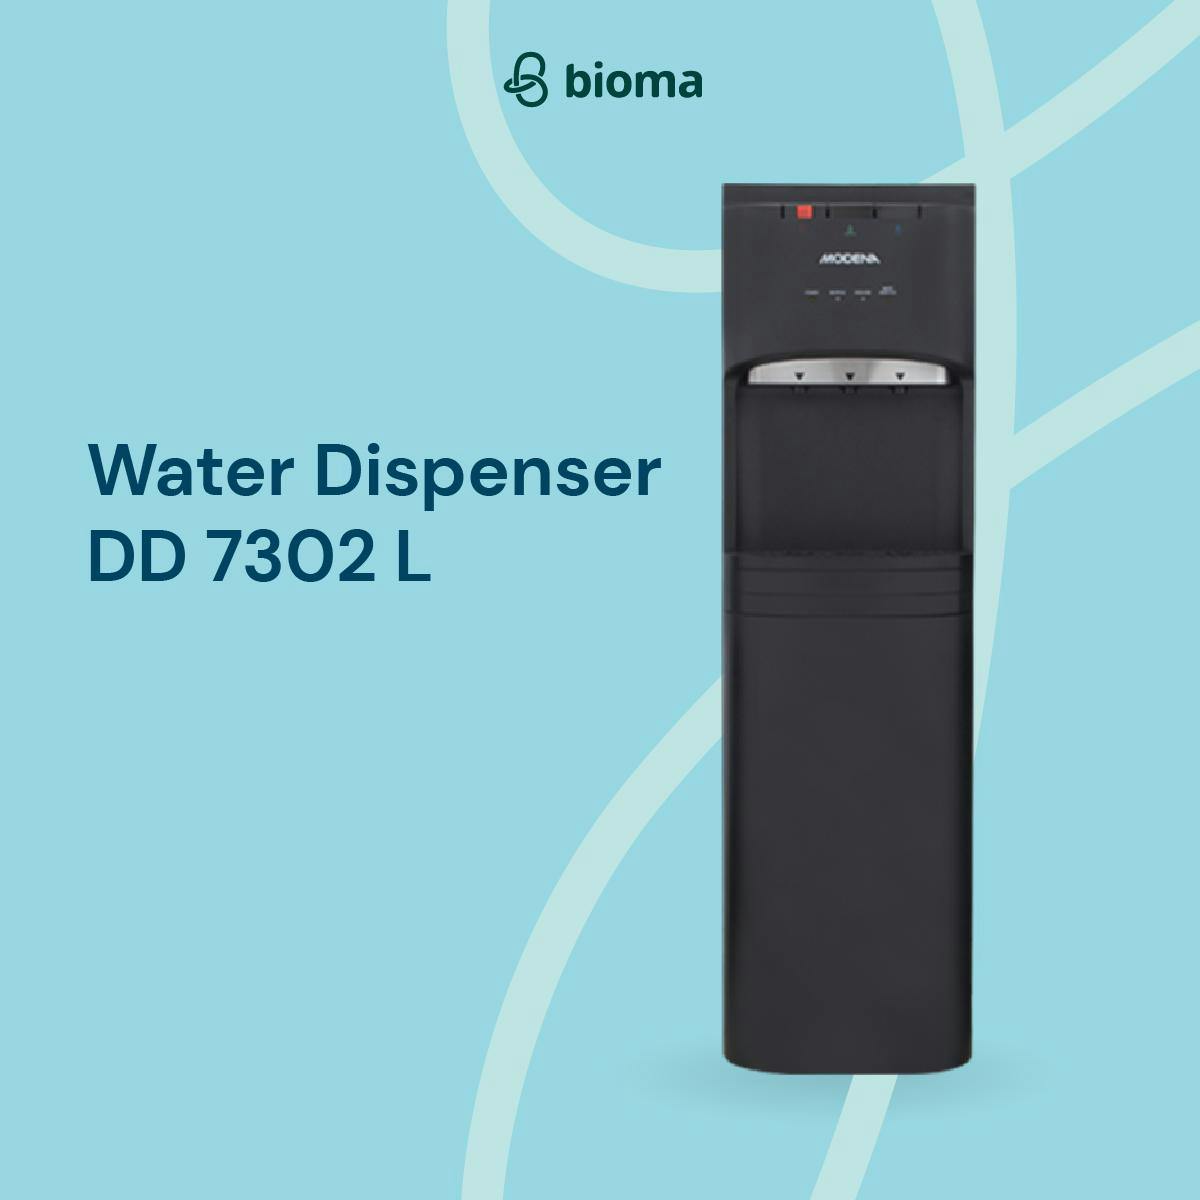 Water Dispenser DD 7302 L